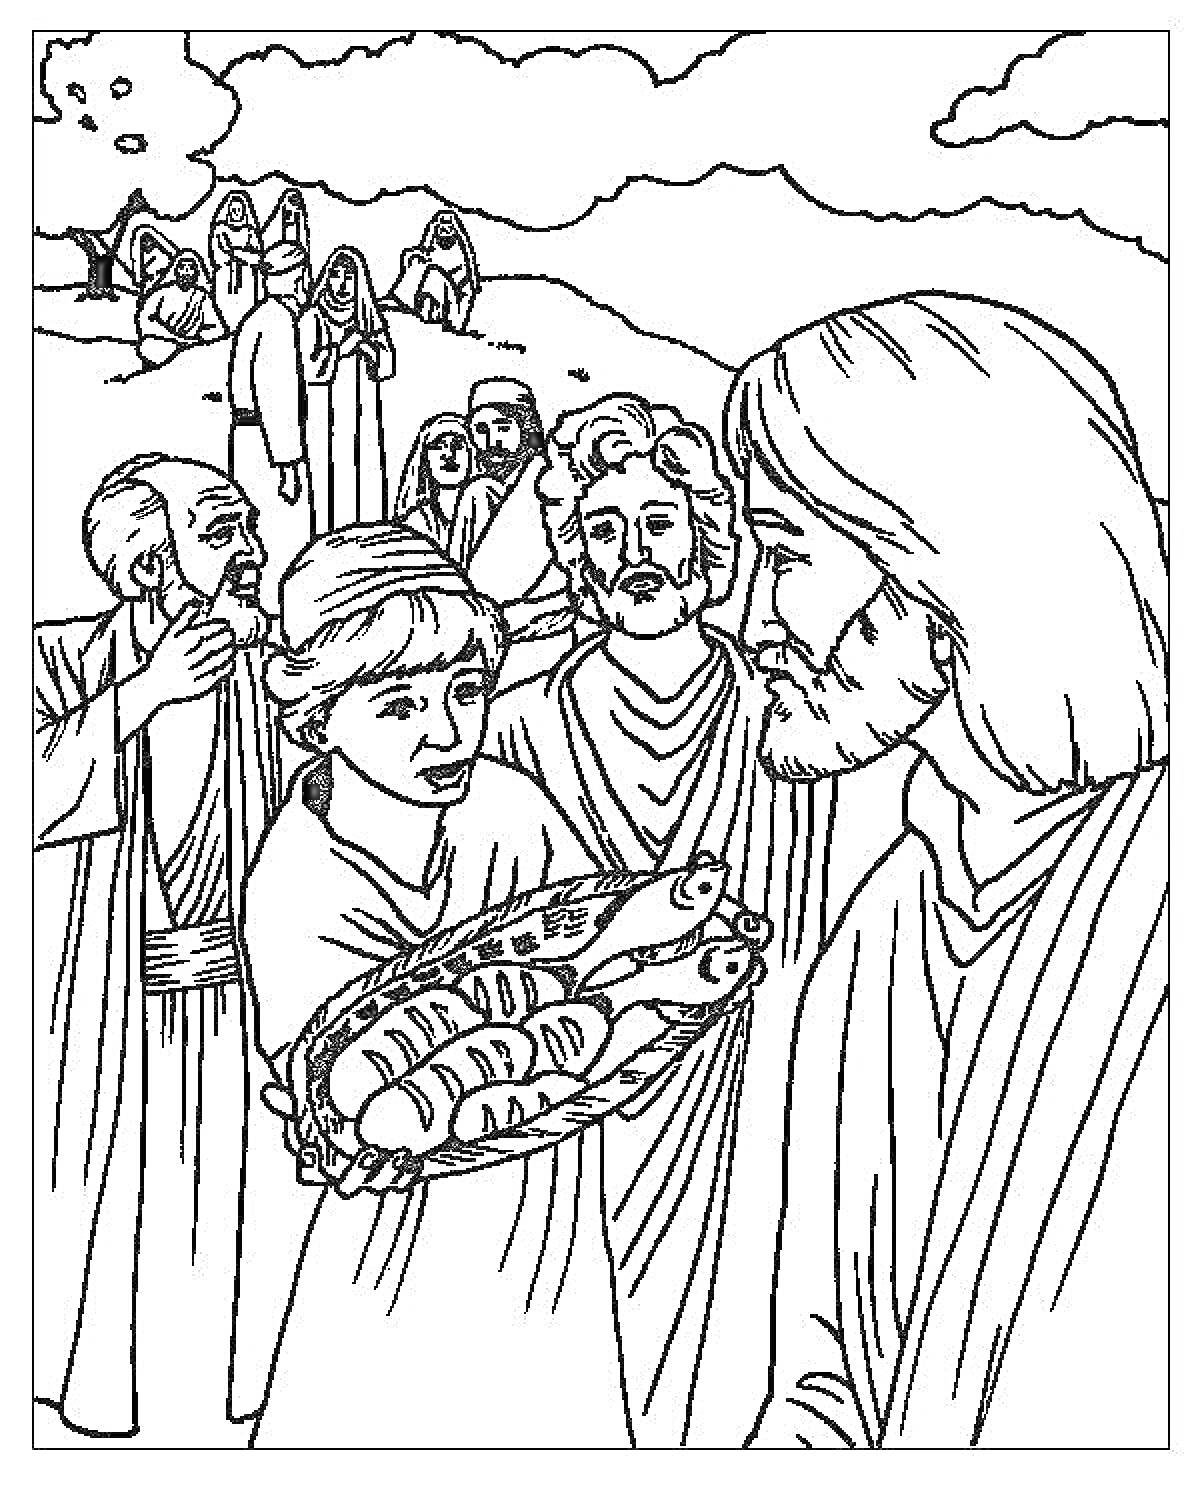 Иисус и мальчик с хлебами и рыбами, окружены учениками и толпой людей на фоне